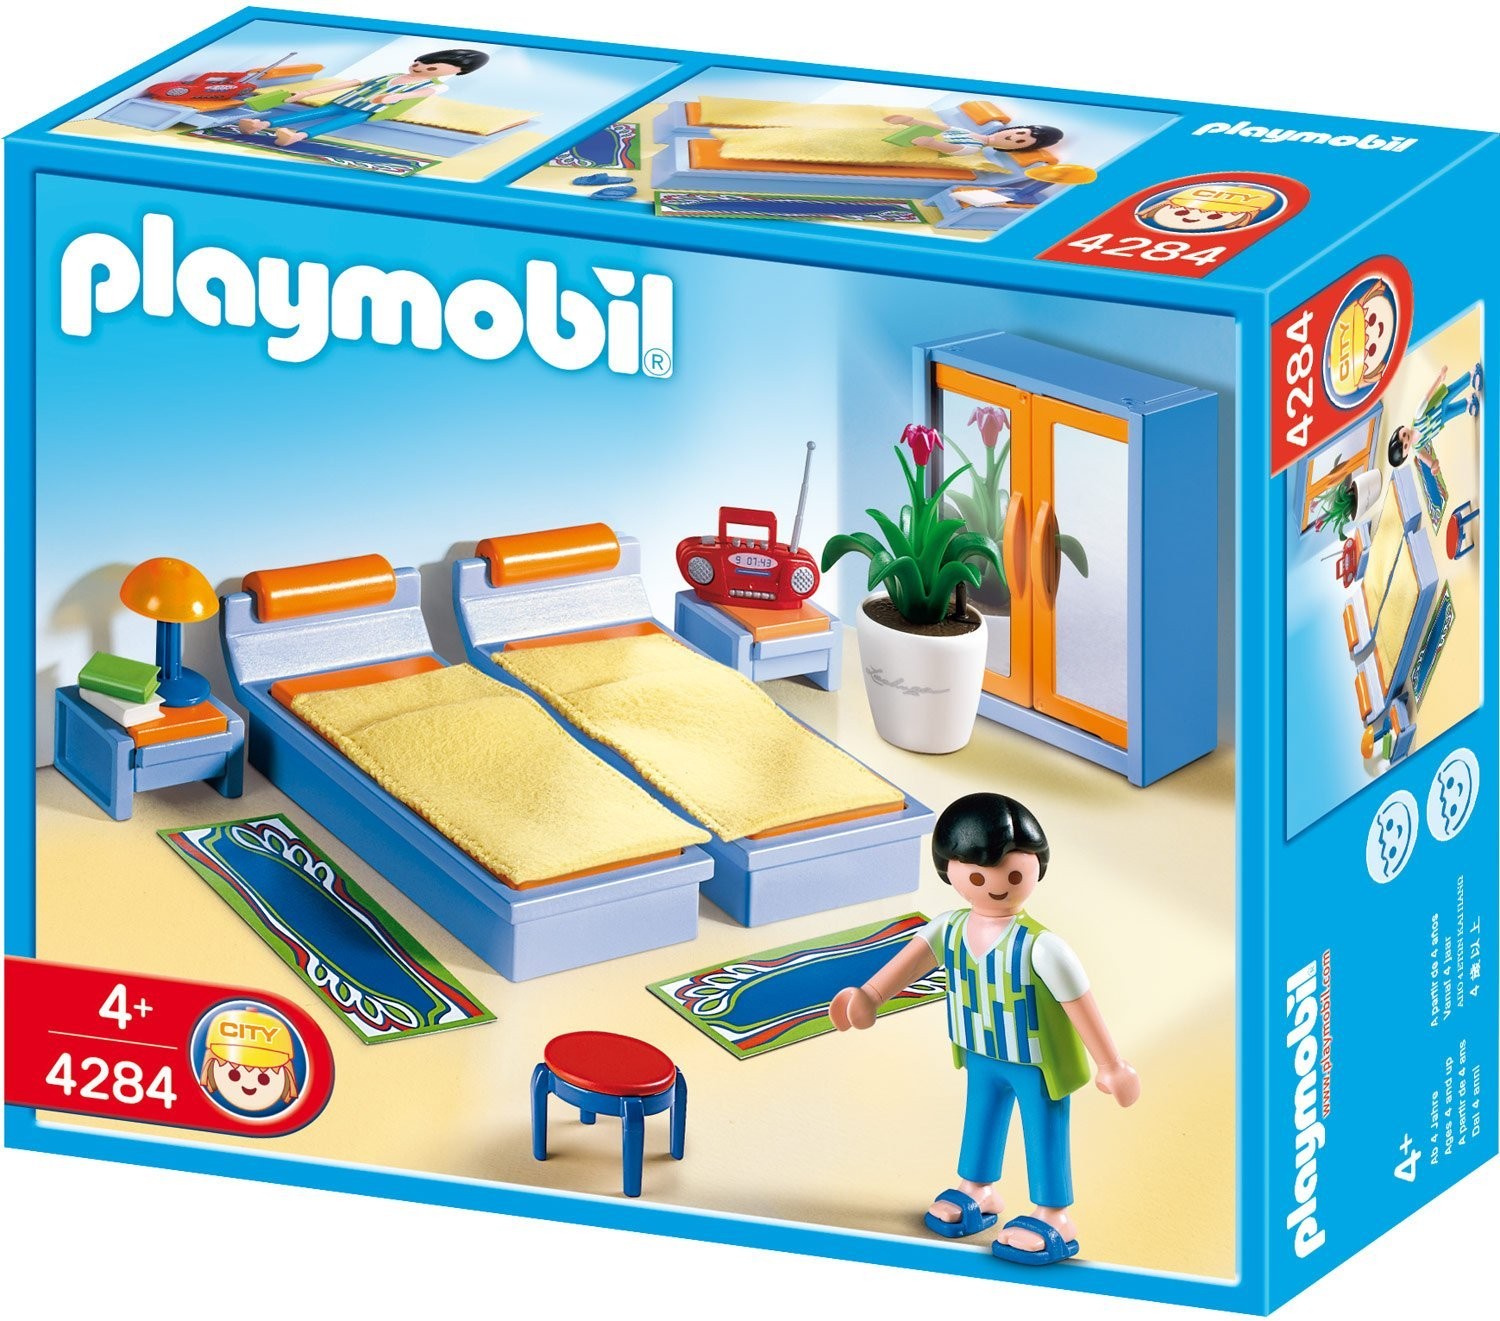 zondag In beweging Instrument 4284 bedroom family - Playmobil - Playmobileros - Tienda de Playmobil Nuevo  y Ocasión